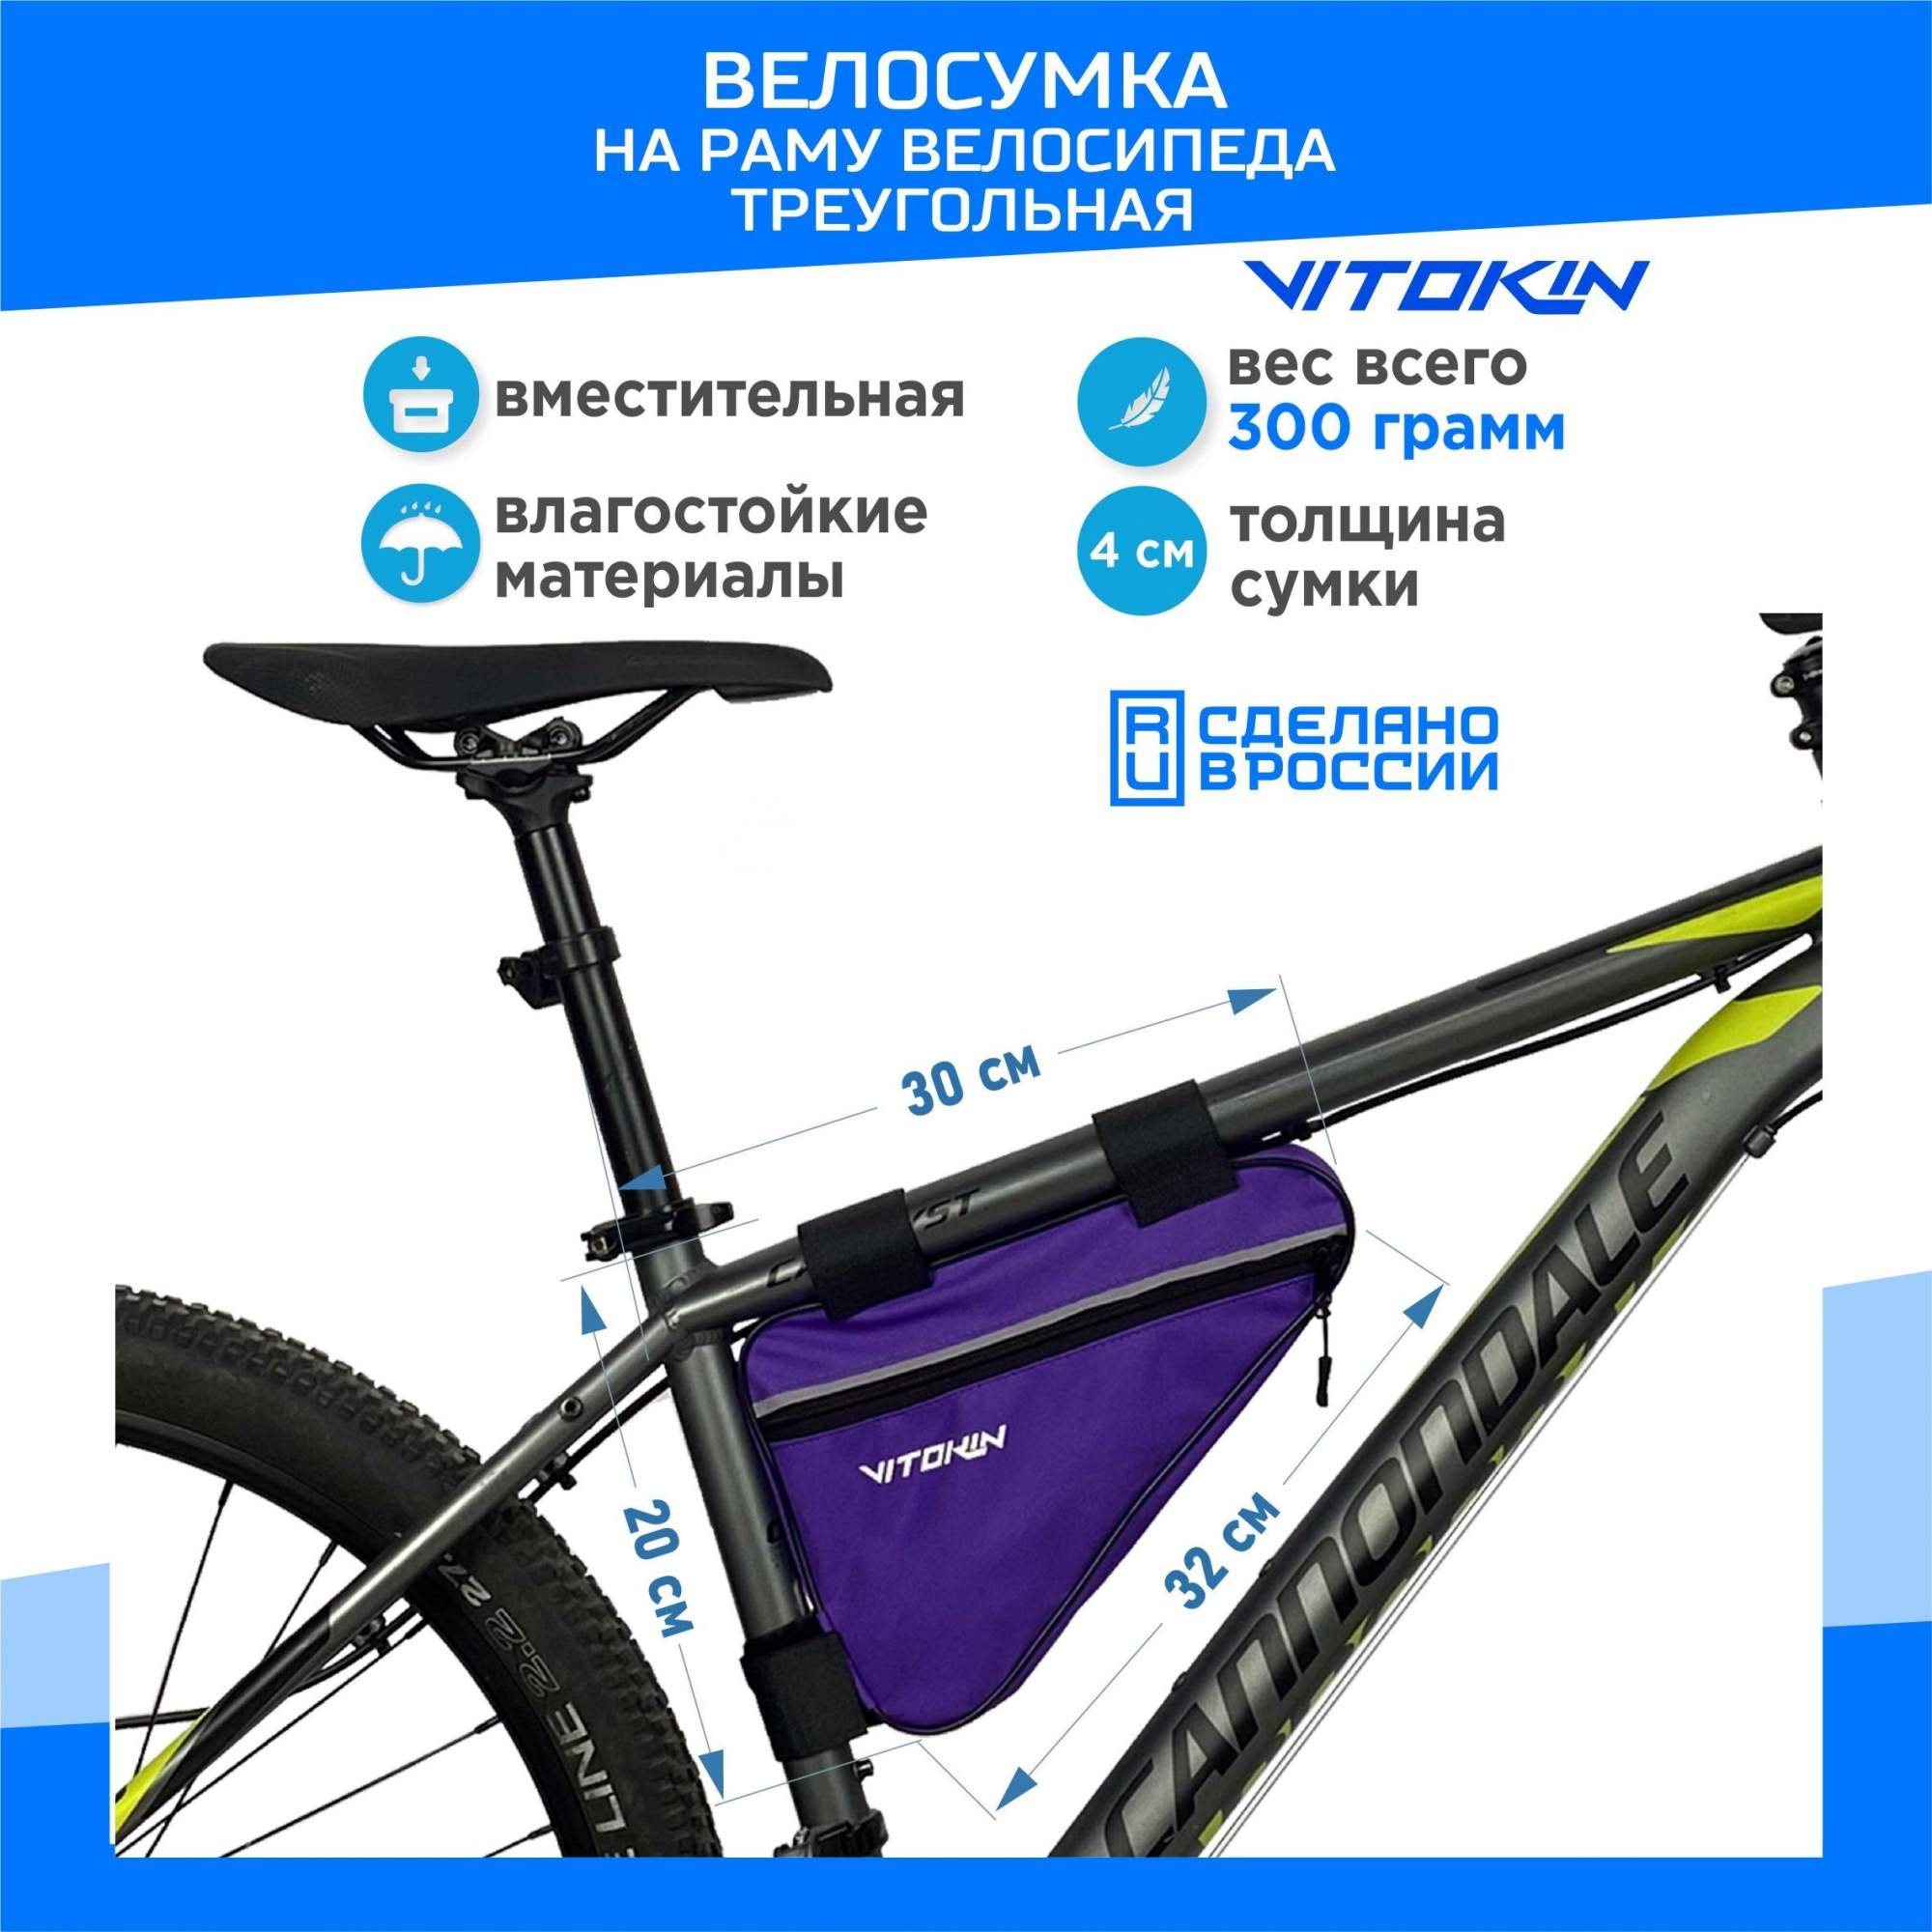 Велосумка под раму велосипеда VITOKIN, фиолетовая